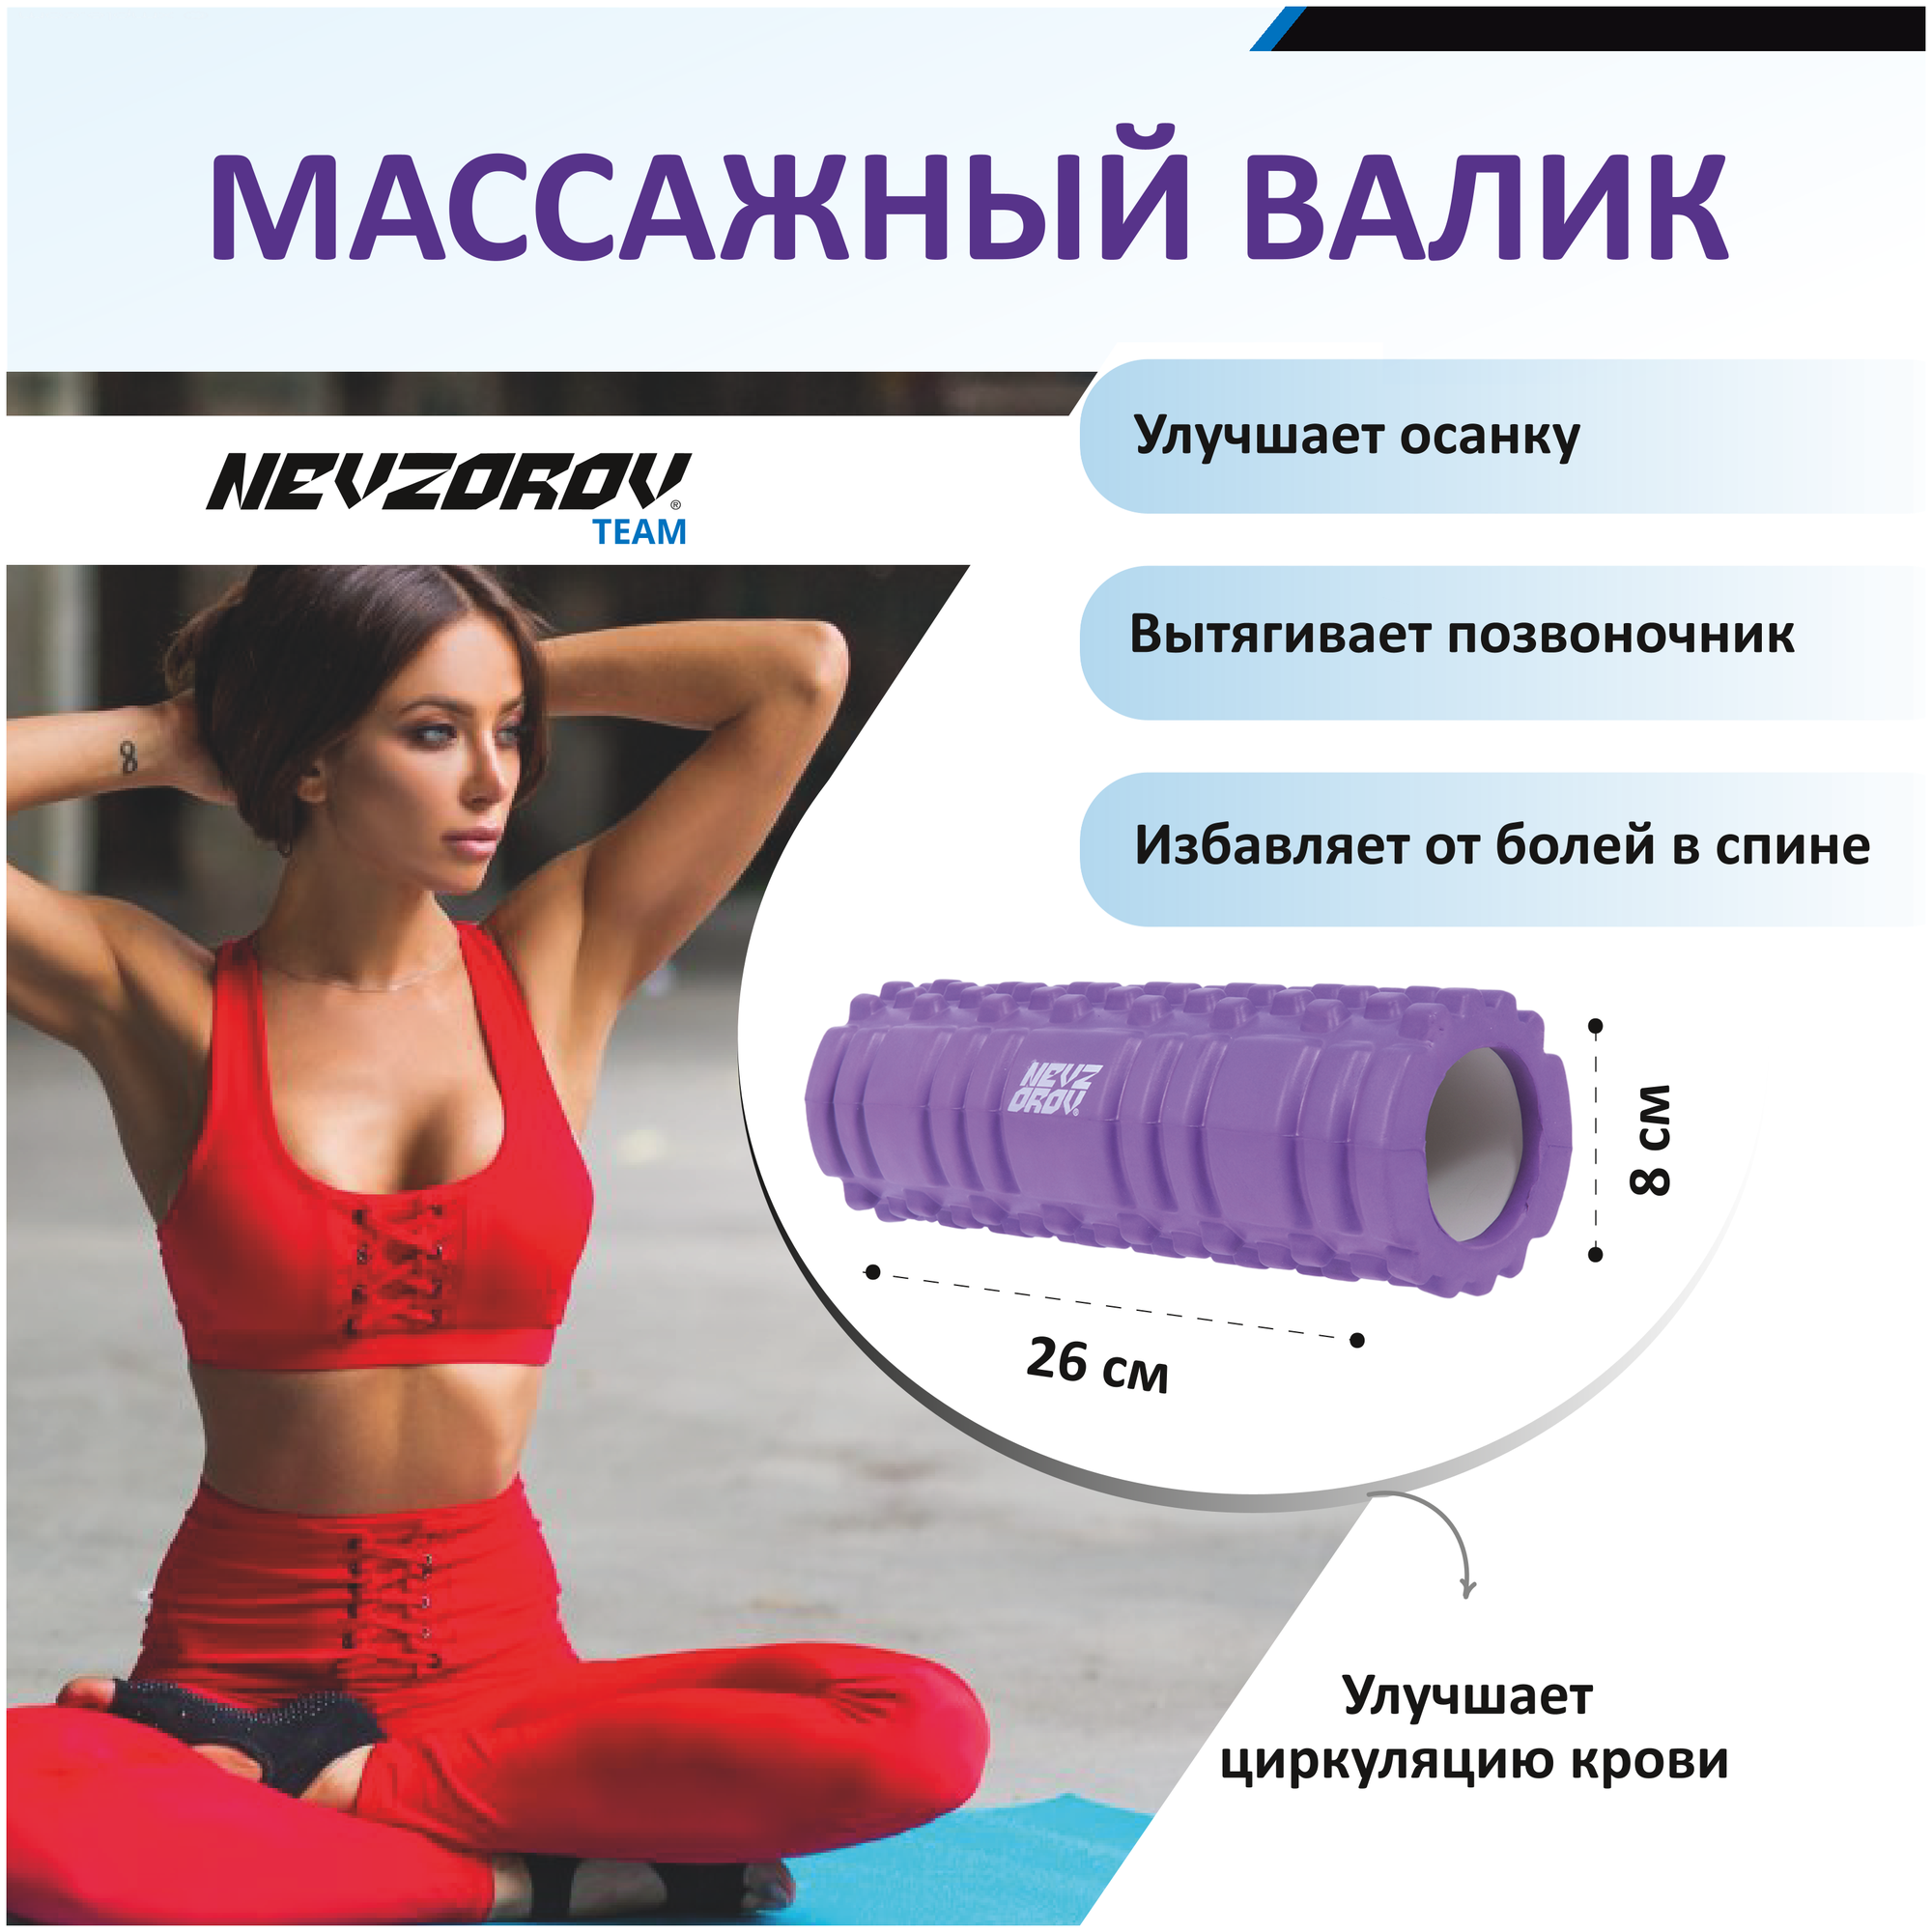 Валик для фитнеса Nevzorov Team 26х8 см фиолетовый - фотография № 1